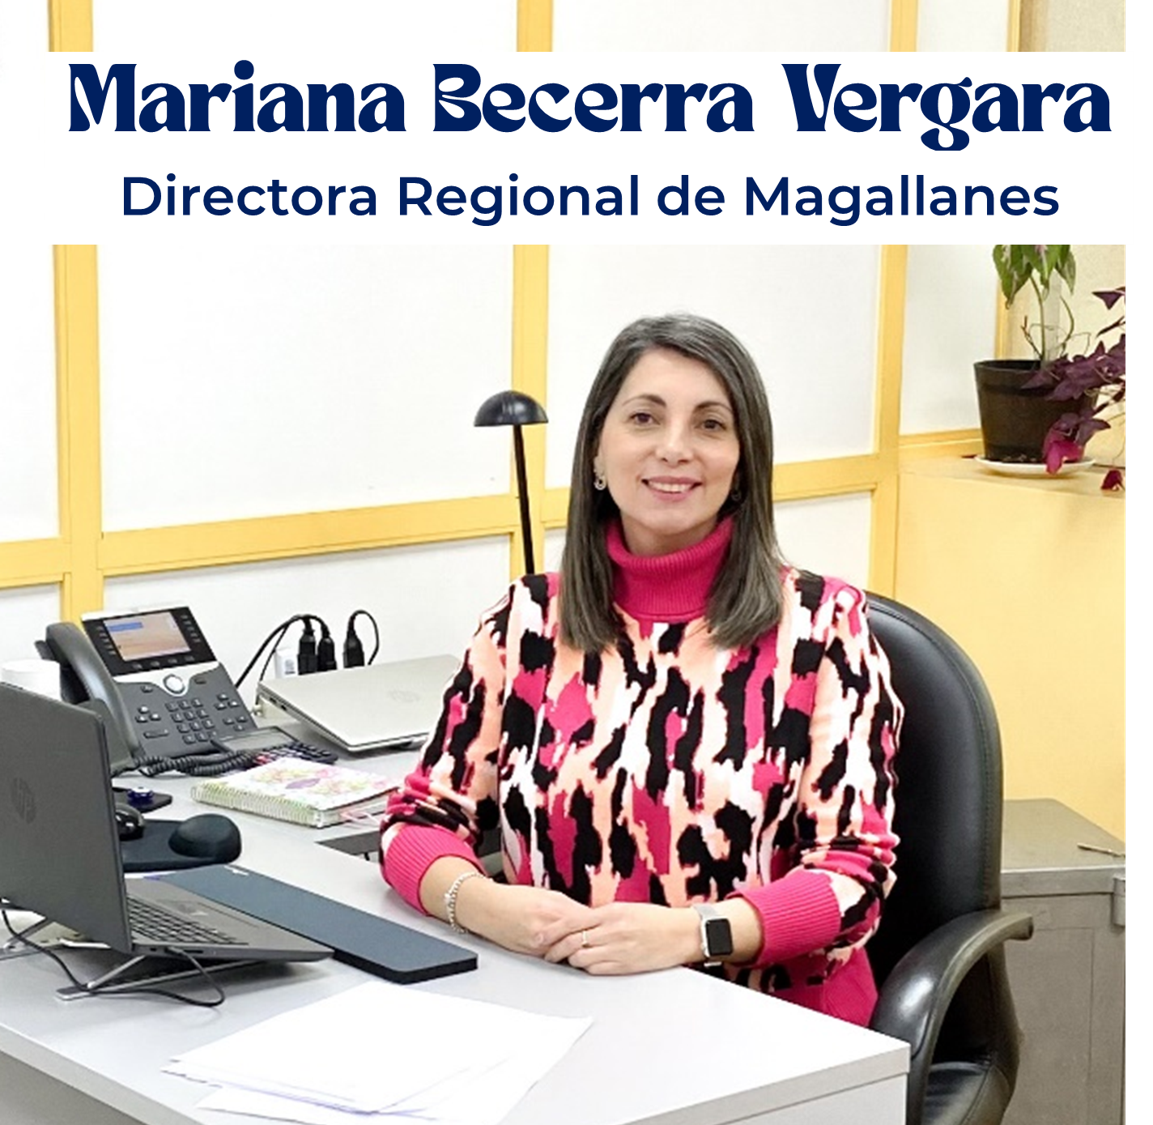 Saludamos a la Directora Regional de Los Magallanes, Mariana Becerra Vergara 